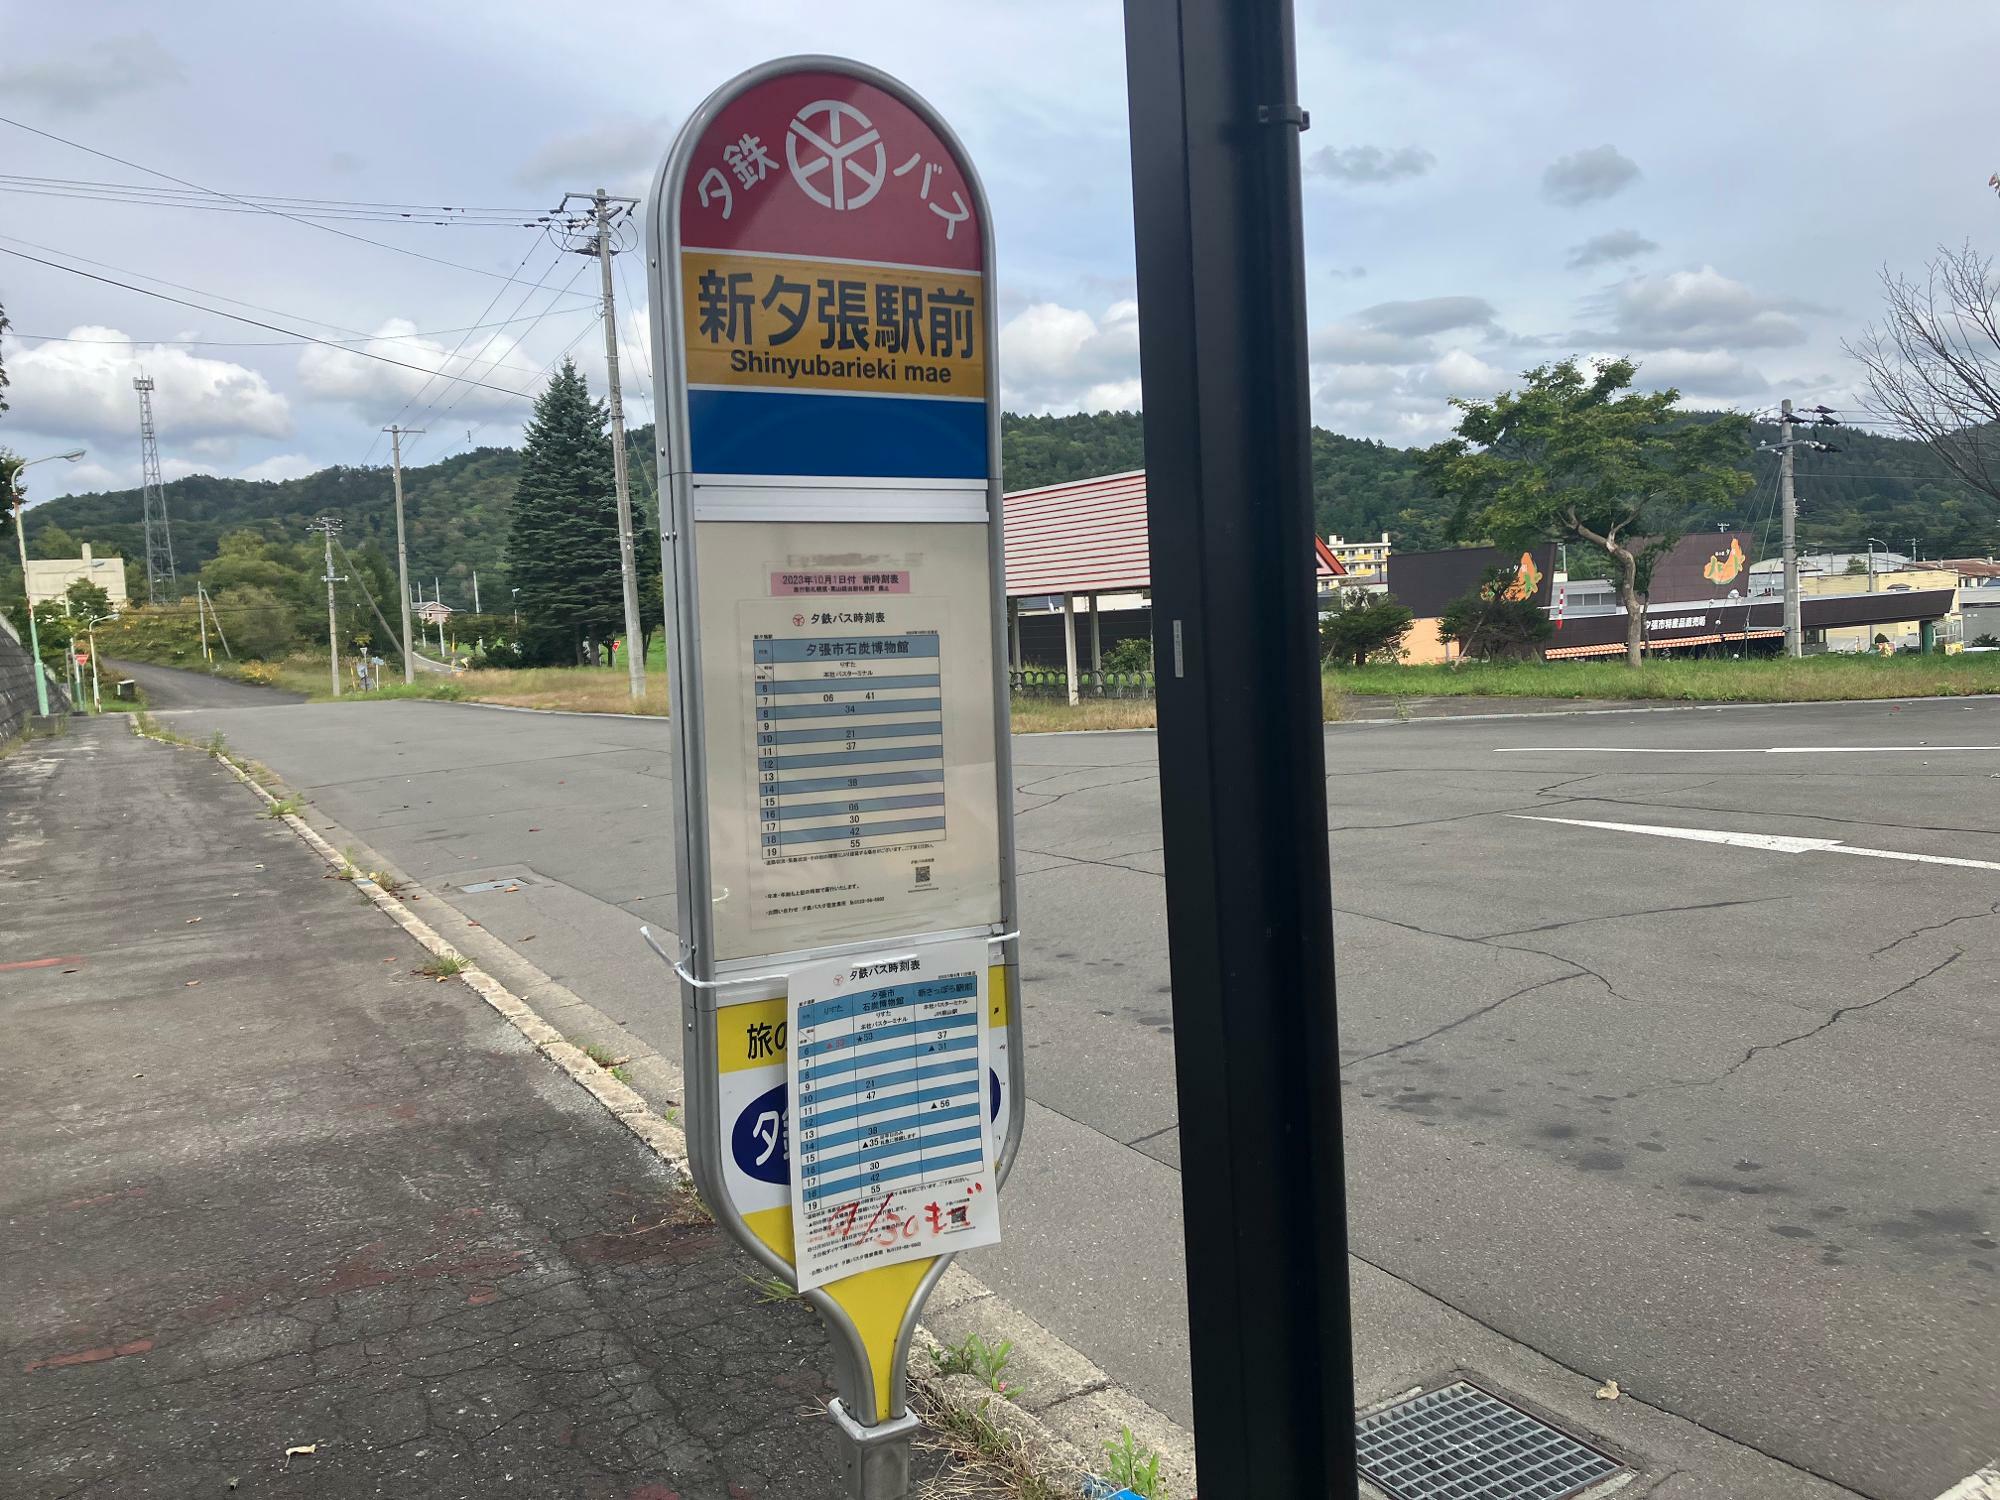 バス停には改正前、改正後、双方の時刻が掲示されていた（筆者撮影）